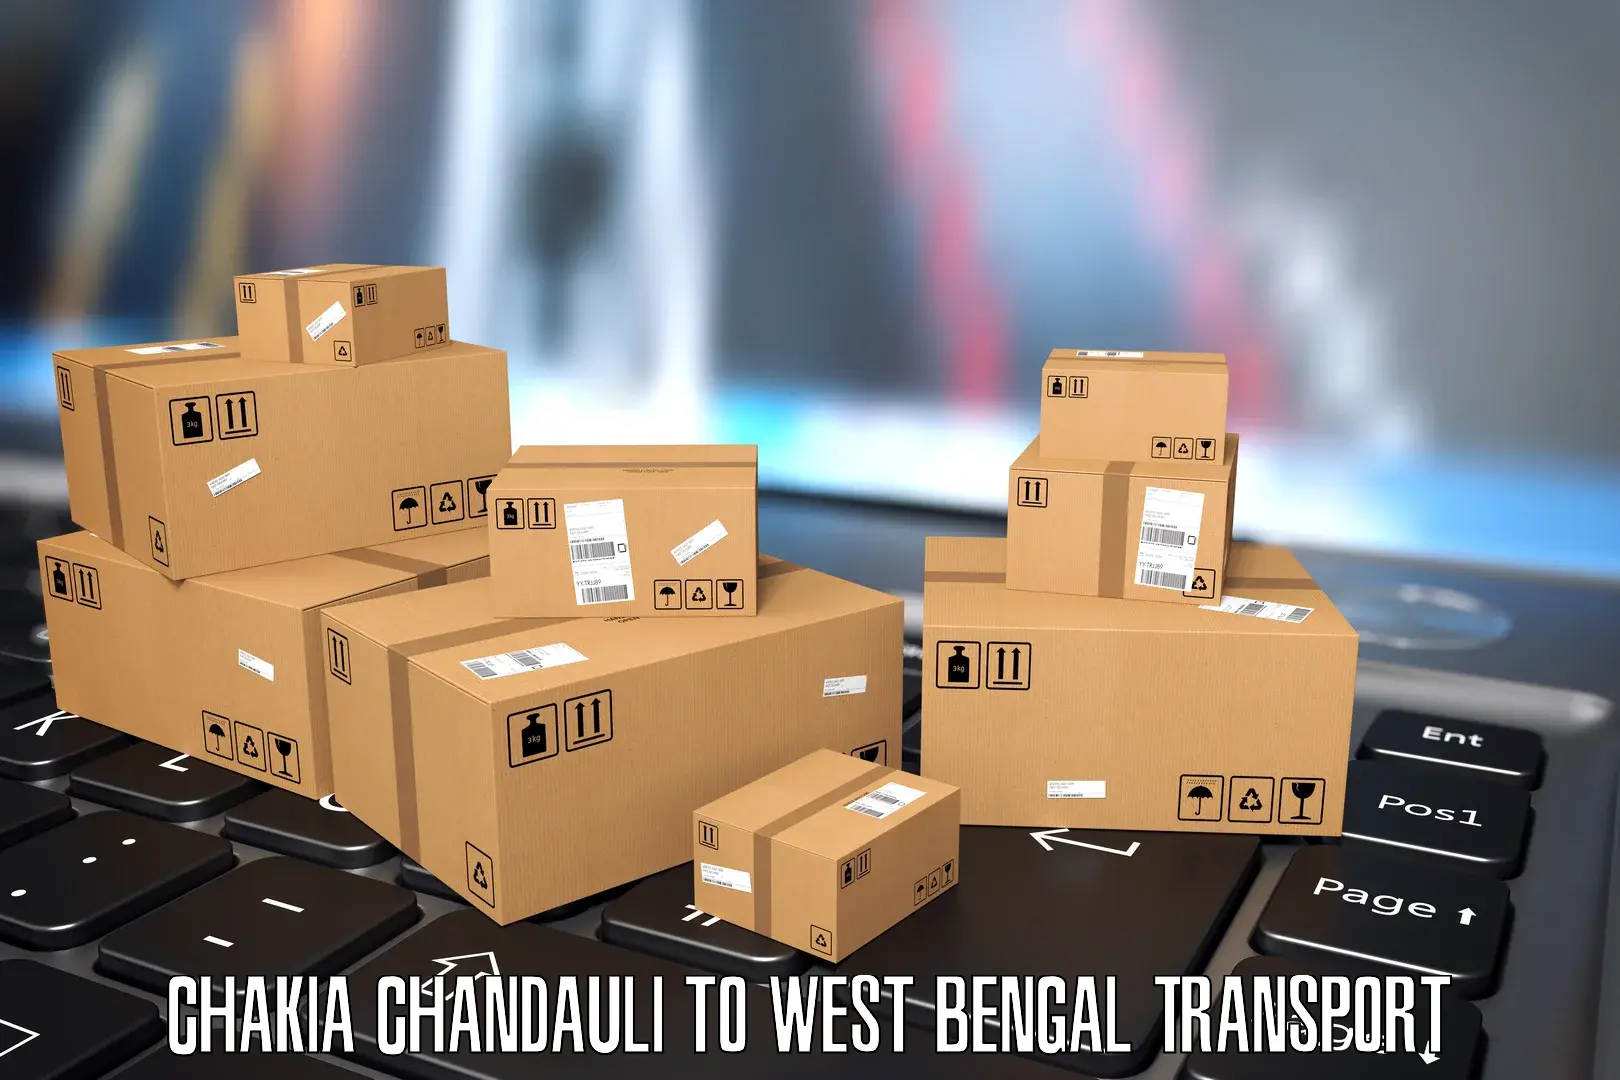 Nationwide transport services Chakia Chandauli to Madhyamgram